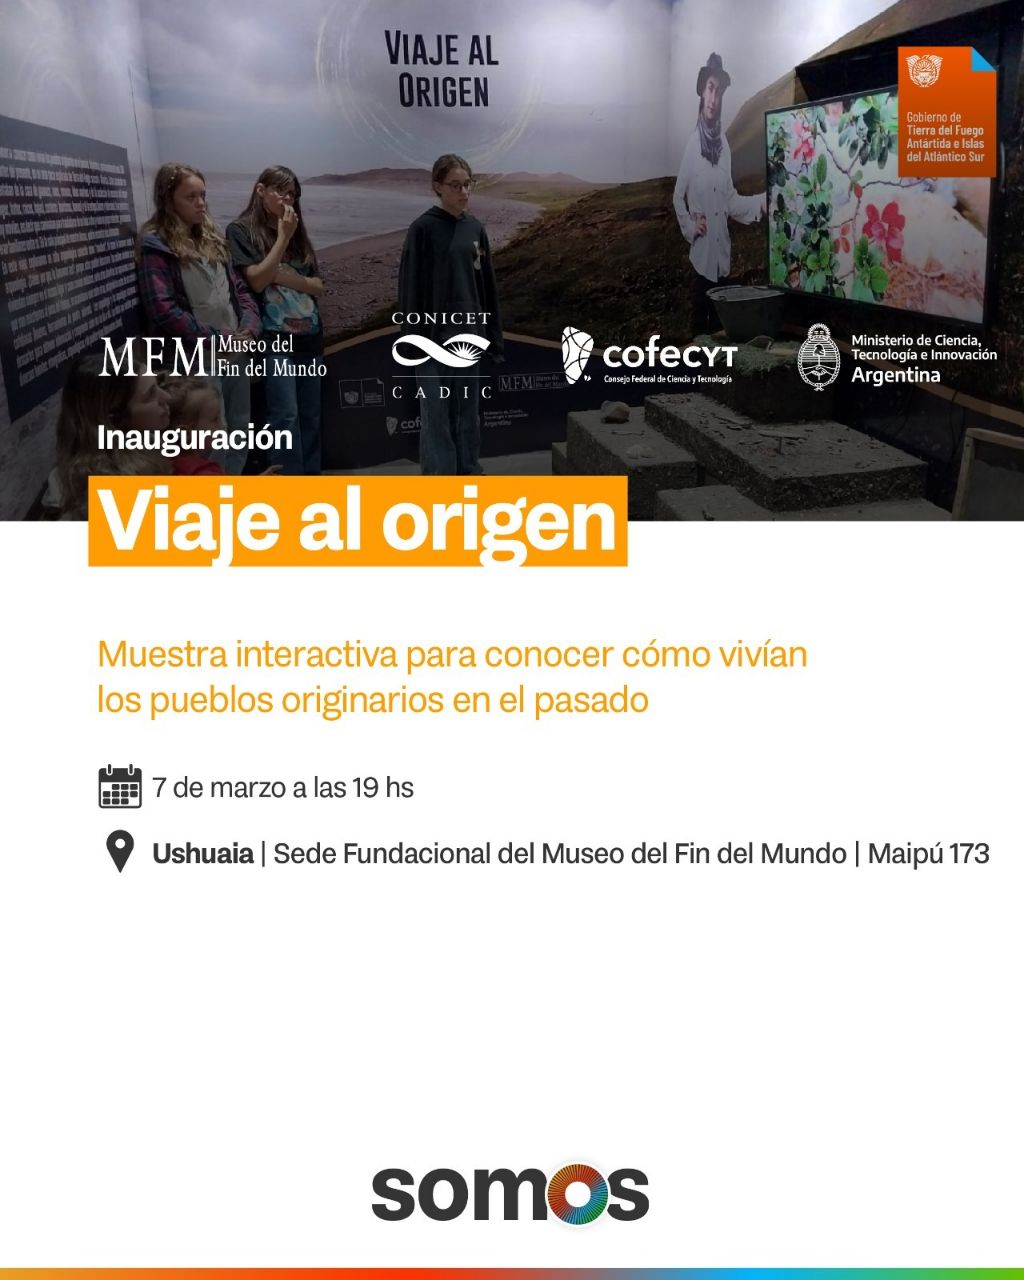 El Museo del Findel Mundo inaugura la muestra interactiva «Viaje al Origen»